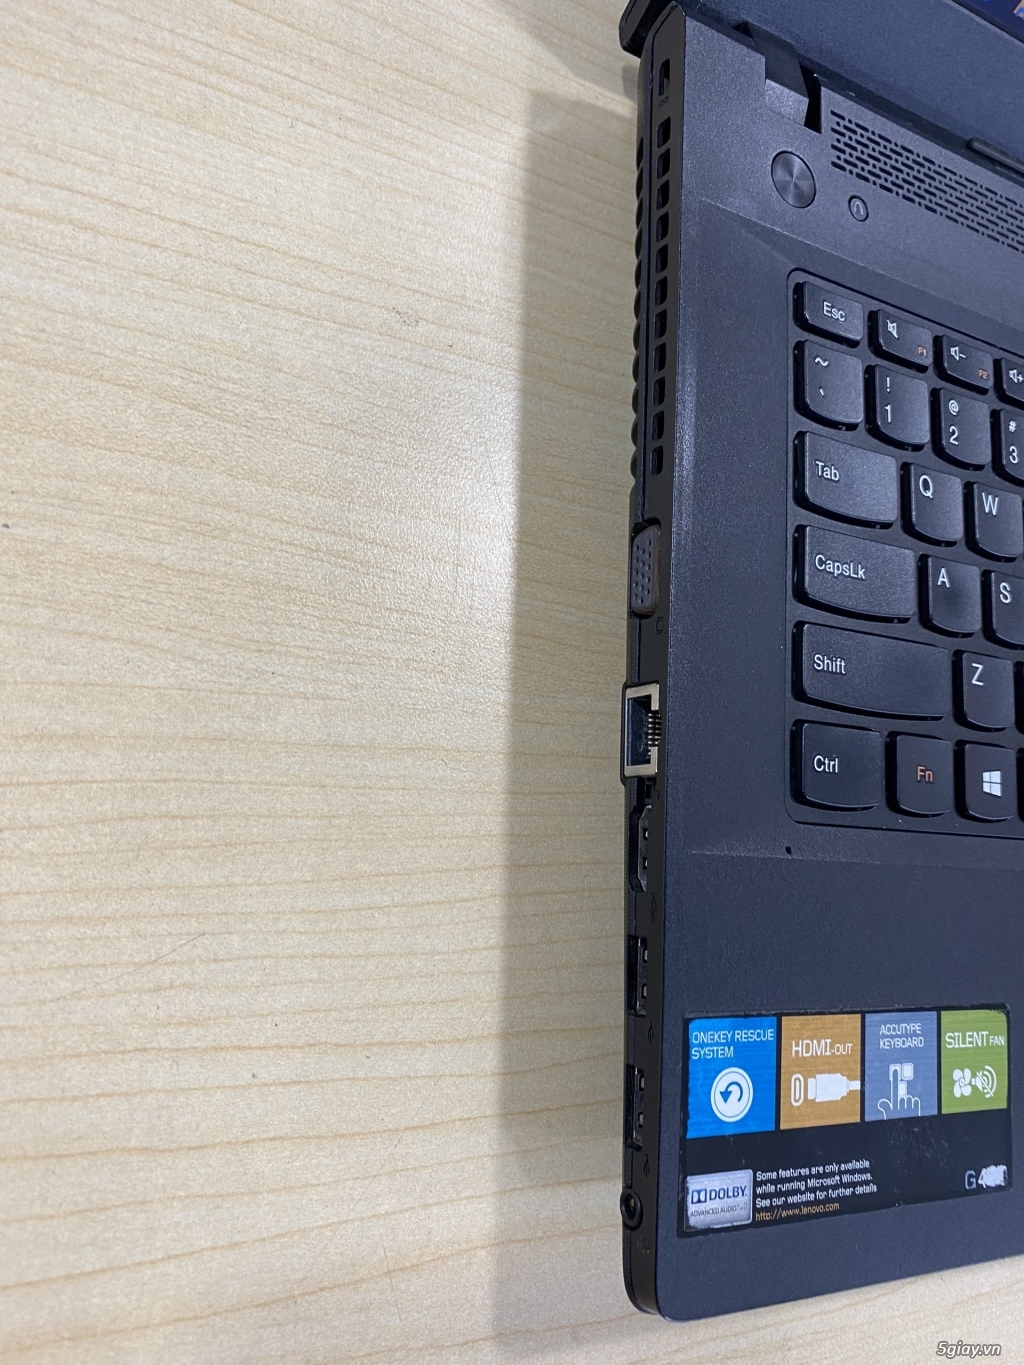 Cần bán Laptop Lenovo G410 i7 4700MQ giá rẽ bèo - 4